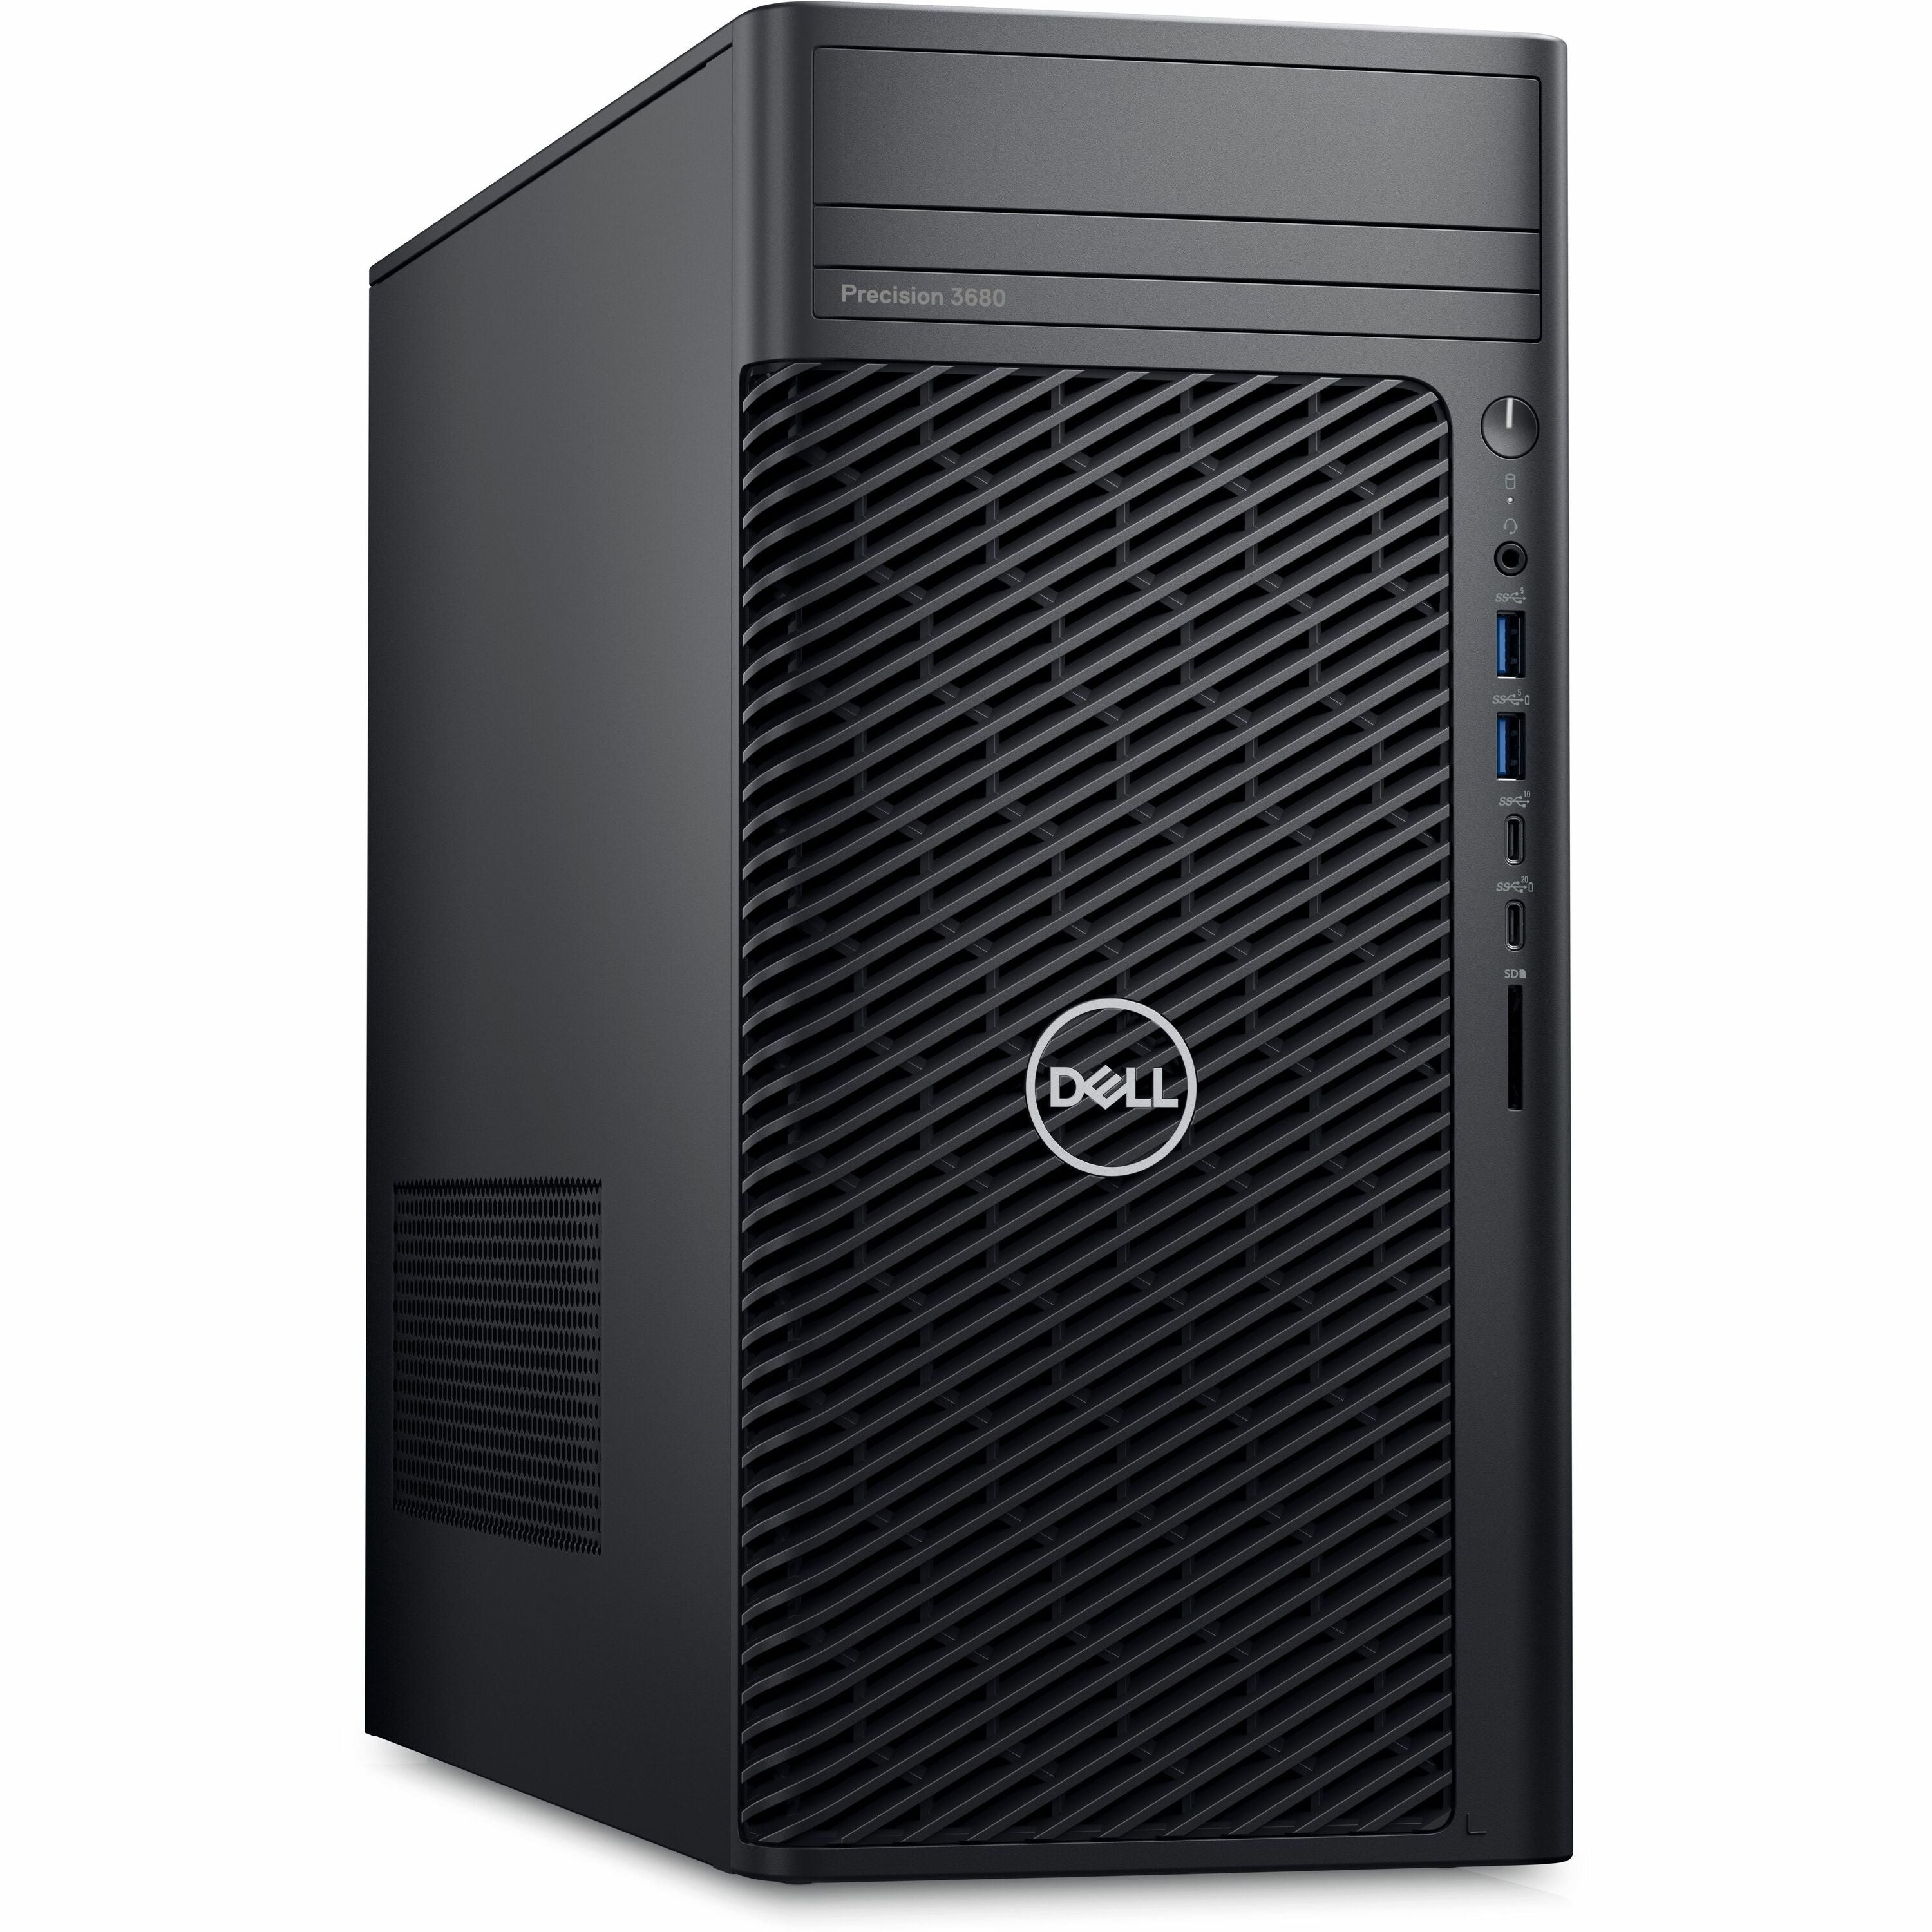 Dell Precision 3000 3680 Workstation - Intel Core i5 14th Gen i5-14500 - 16 GB - 512 GB SSD - Tower - Black - R9M8H